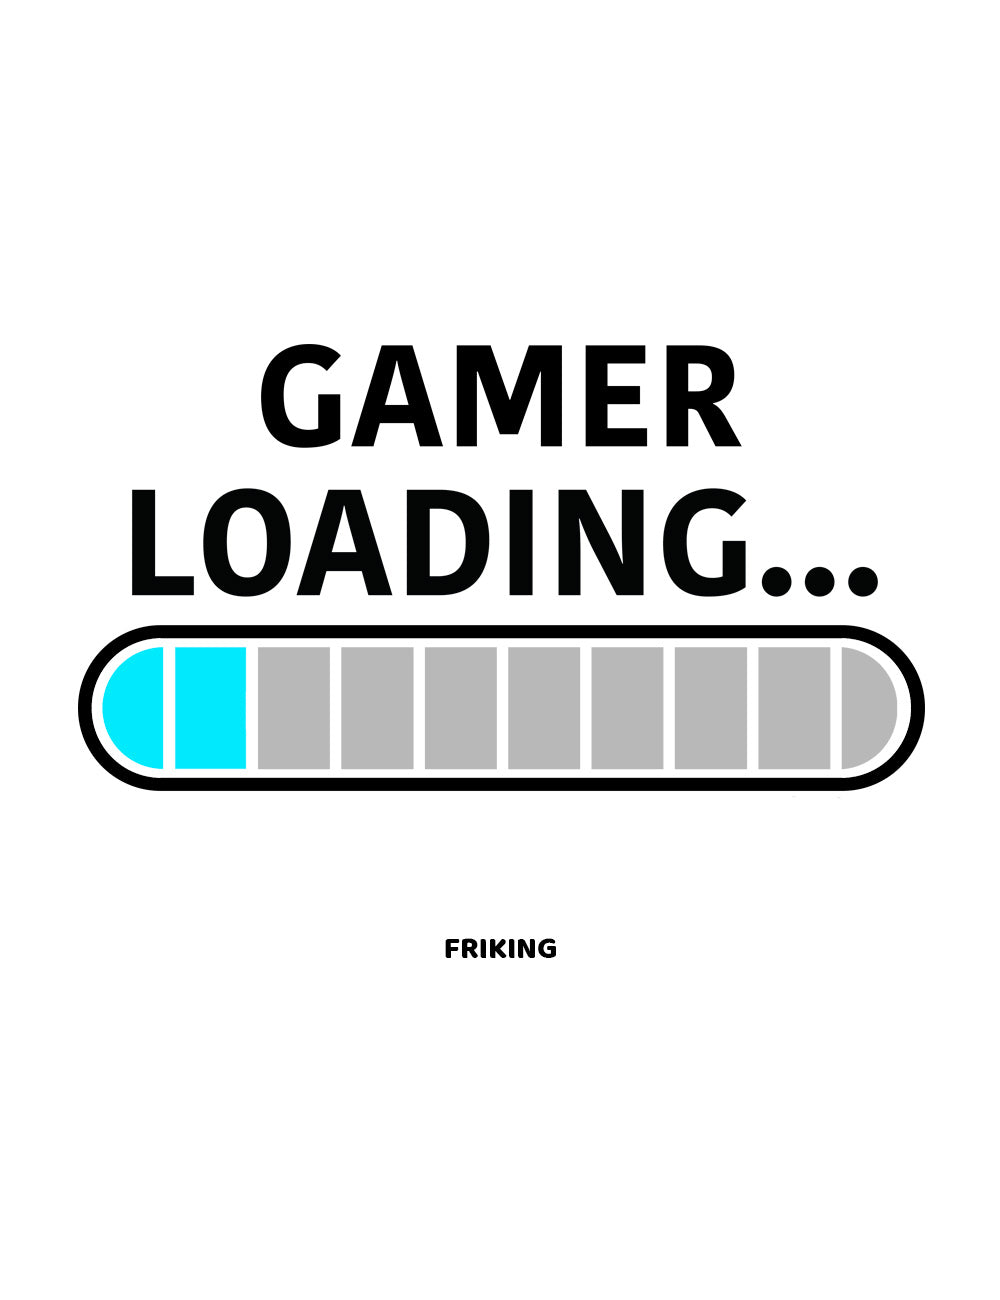 Gamer loading